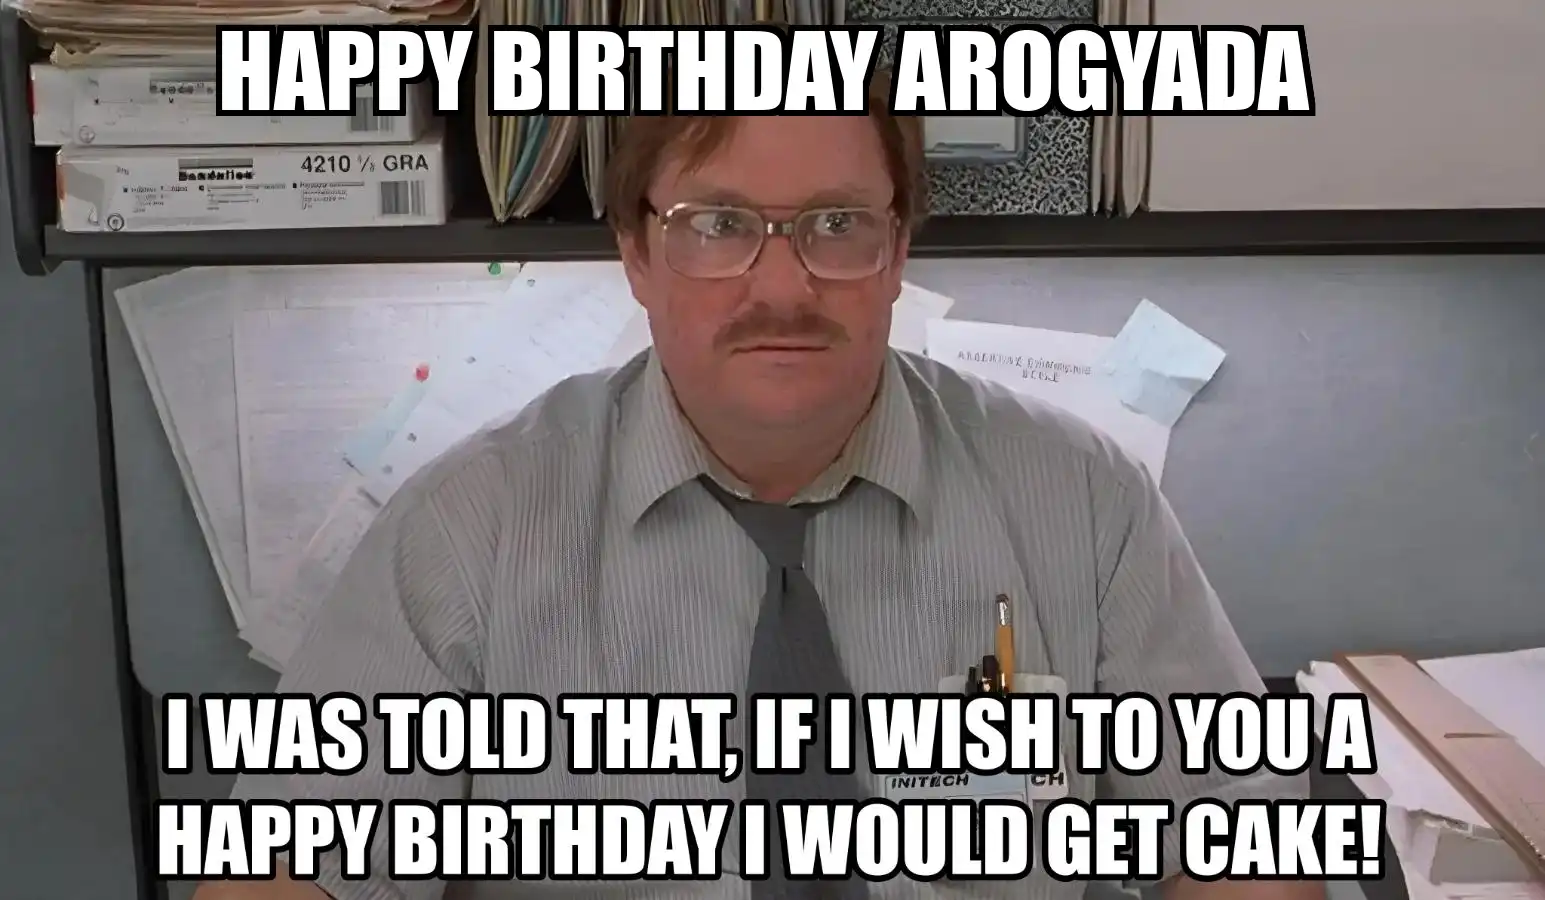 Happy Birthday Arogyada I Would Get A Cake Meme